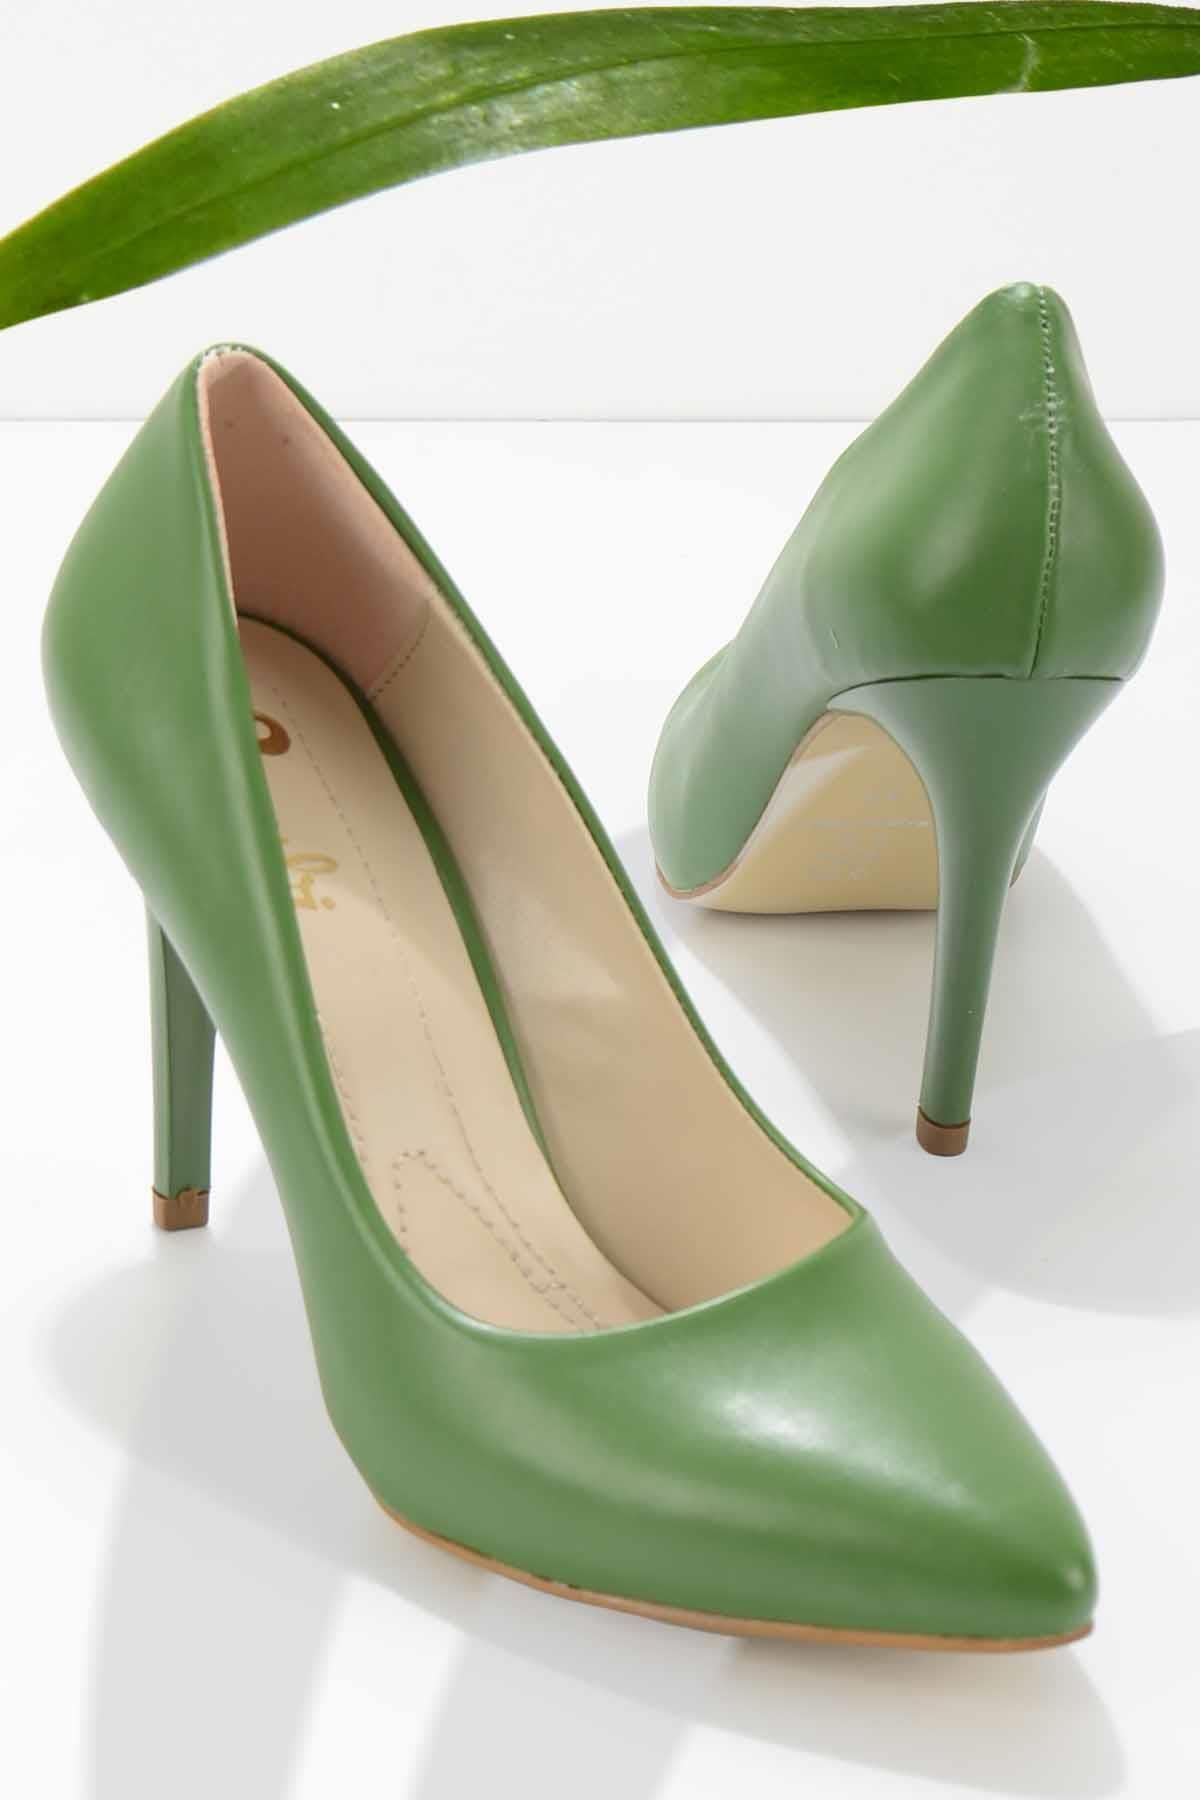 Bambi Yeşil Kadın Klasik Topuklu Ayakkabı K01980050309